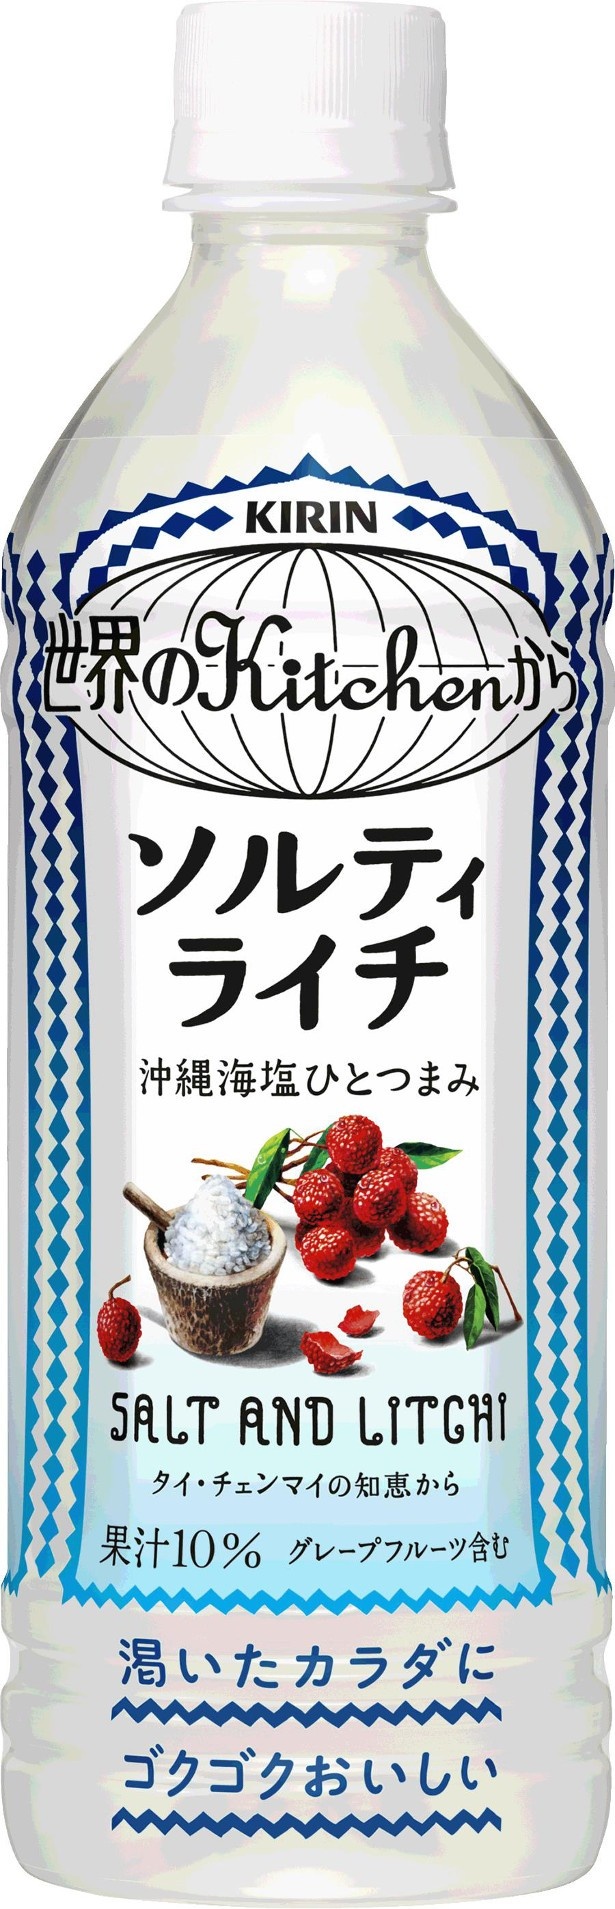 【写真を見る】塩と果実のおいしさを詰め込んだ「世界のKitchenから ソルティライチ」(希望小売価格・税抜136円)は4月19日にリニューアルされ、さらに美味しくなった